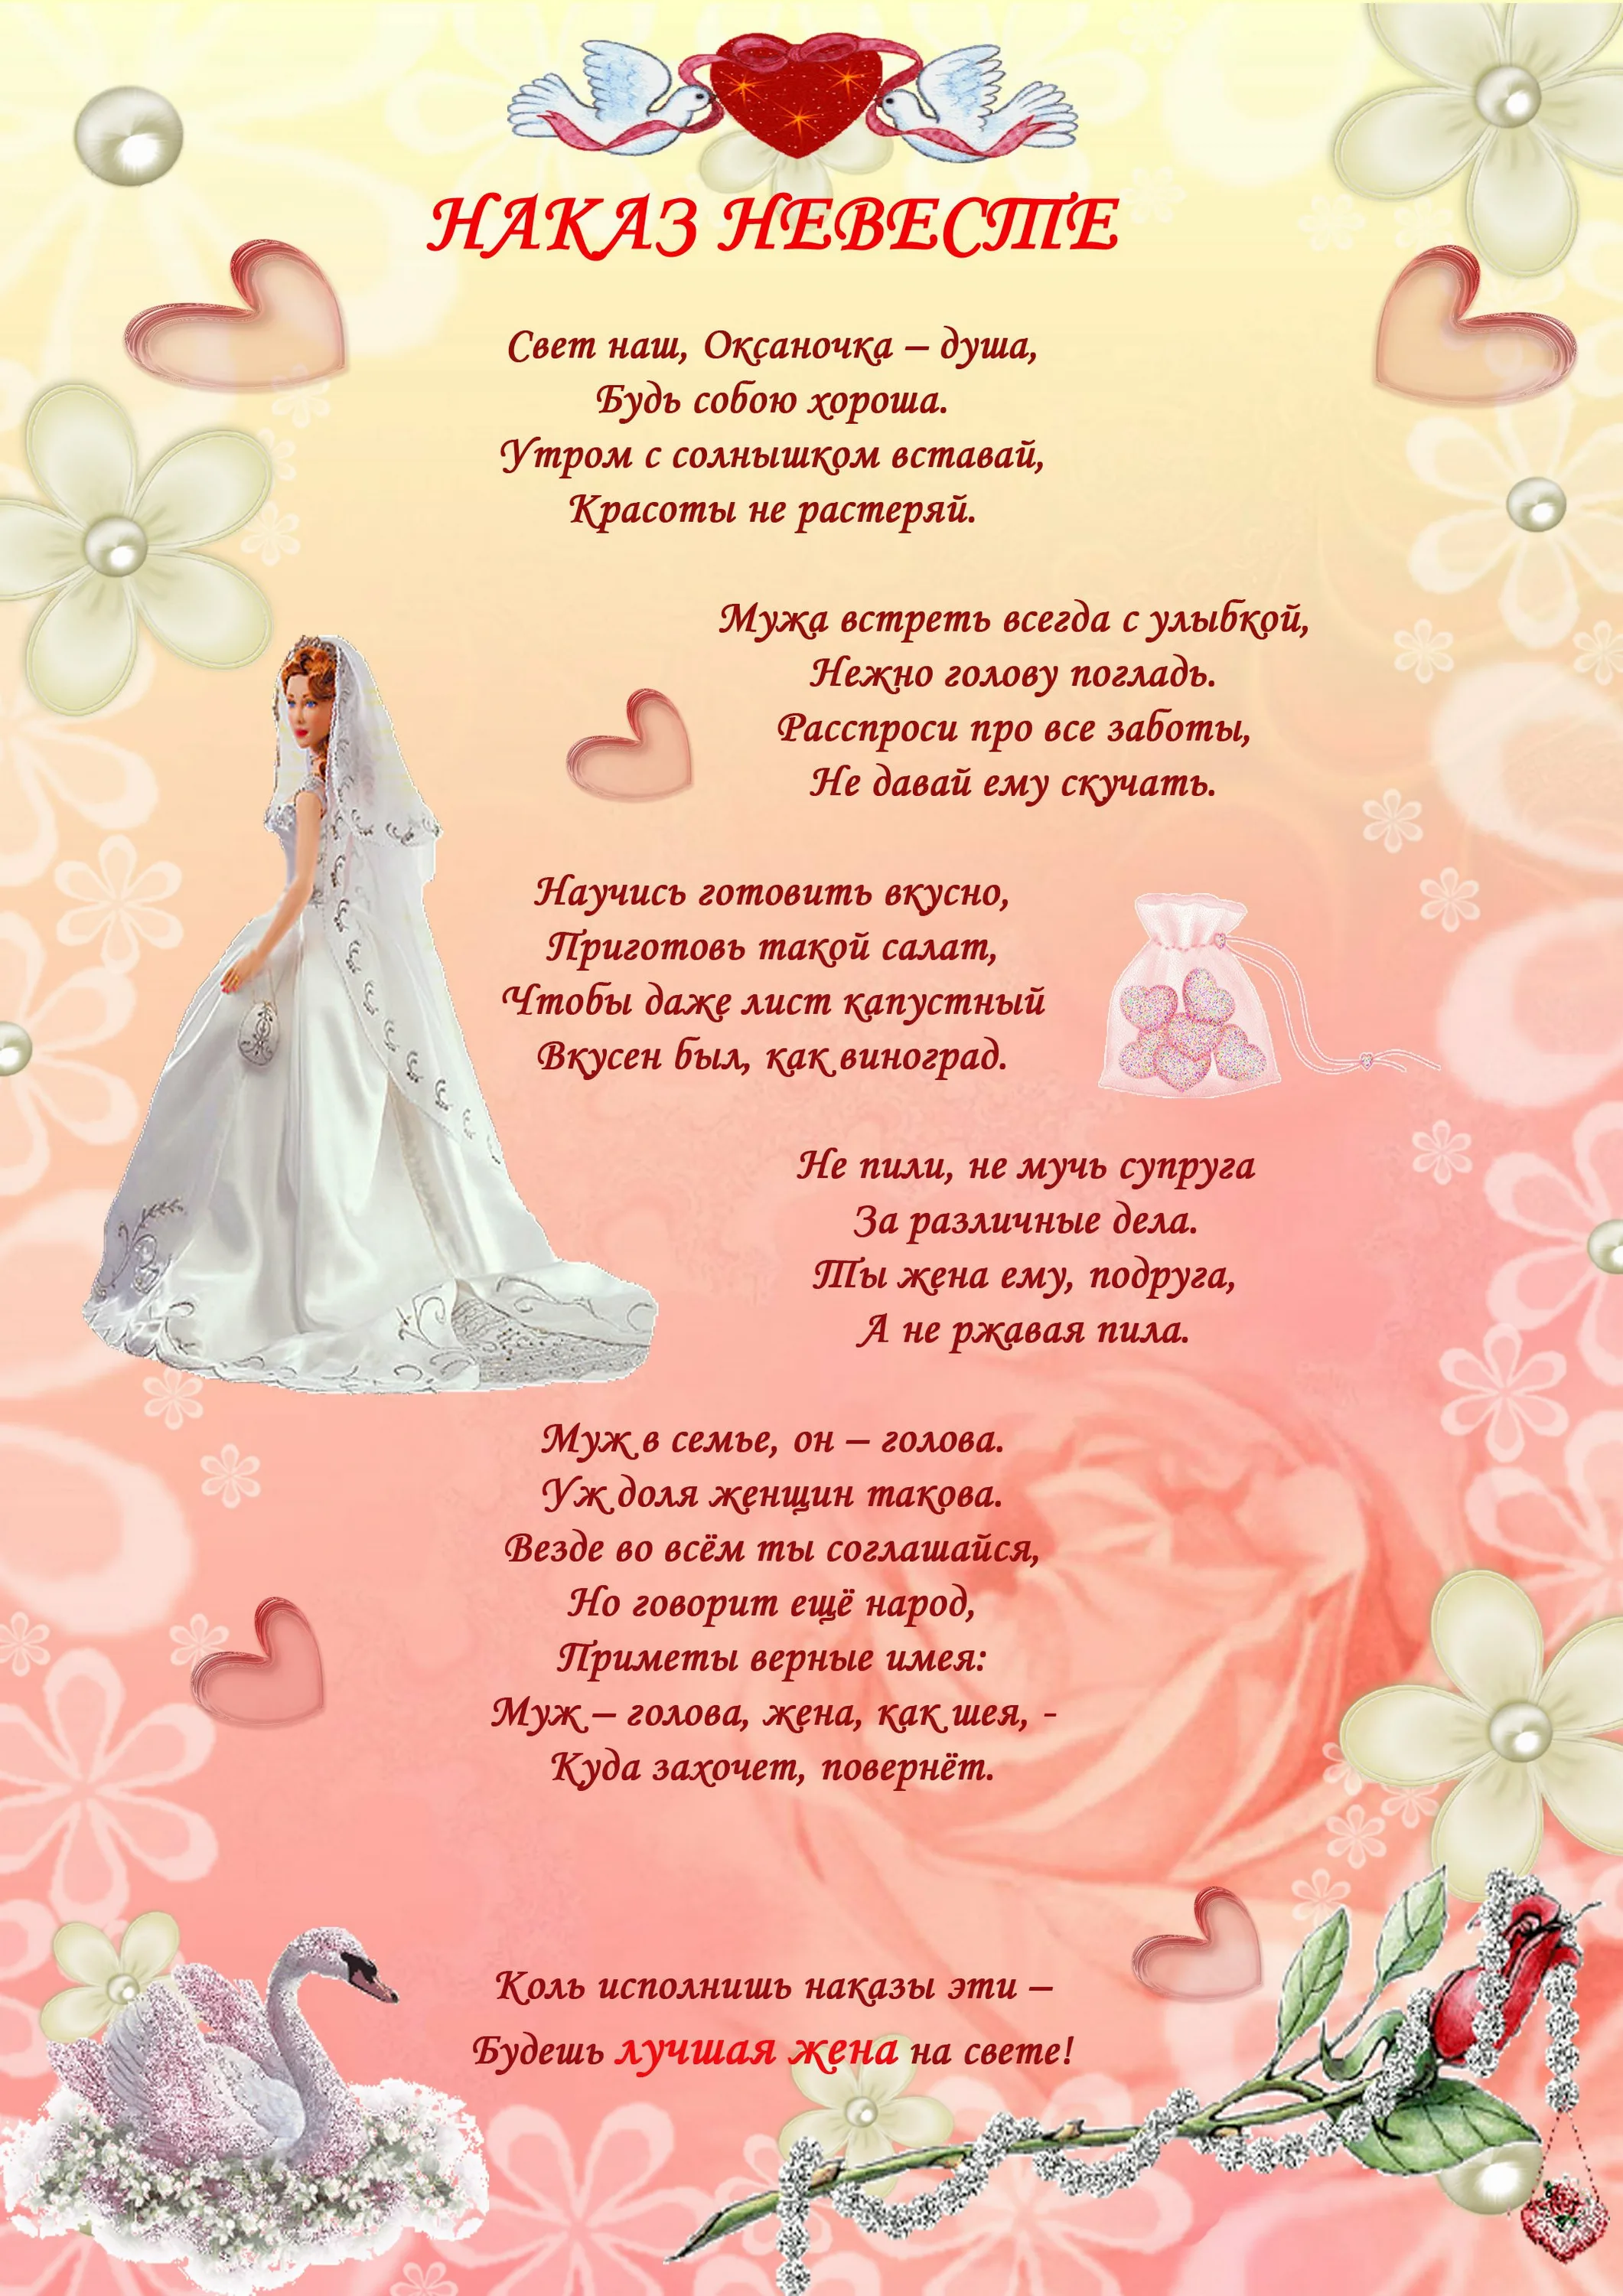 Фото Стихи и слова благодарности на свадьбе от жениха #35